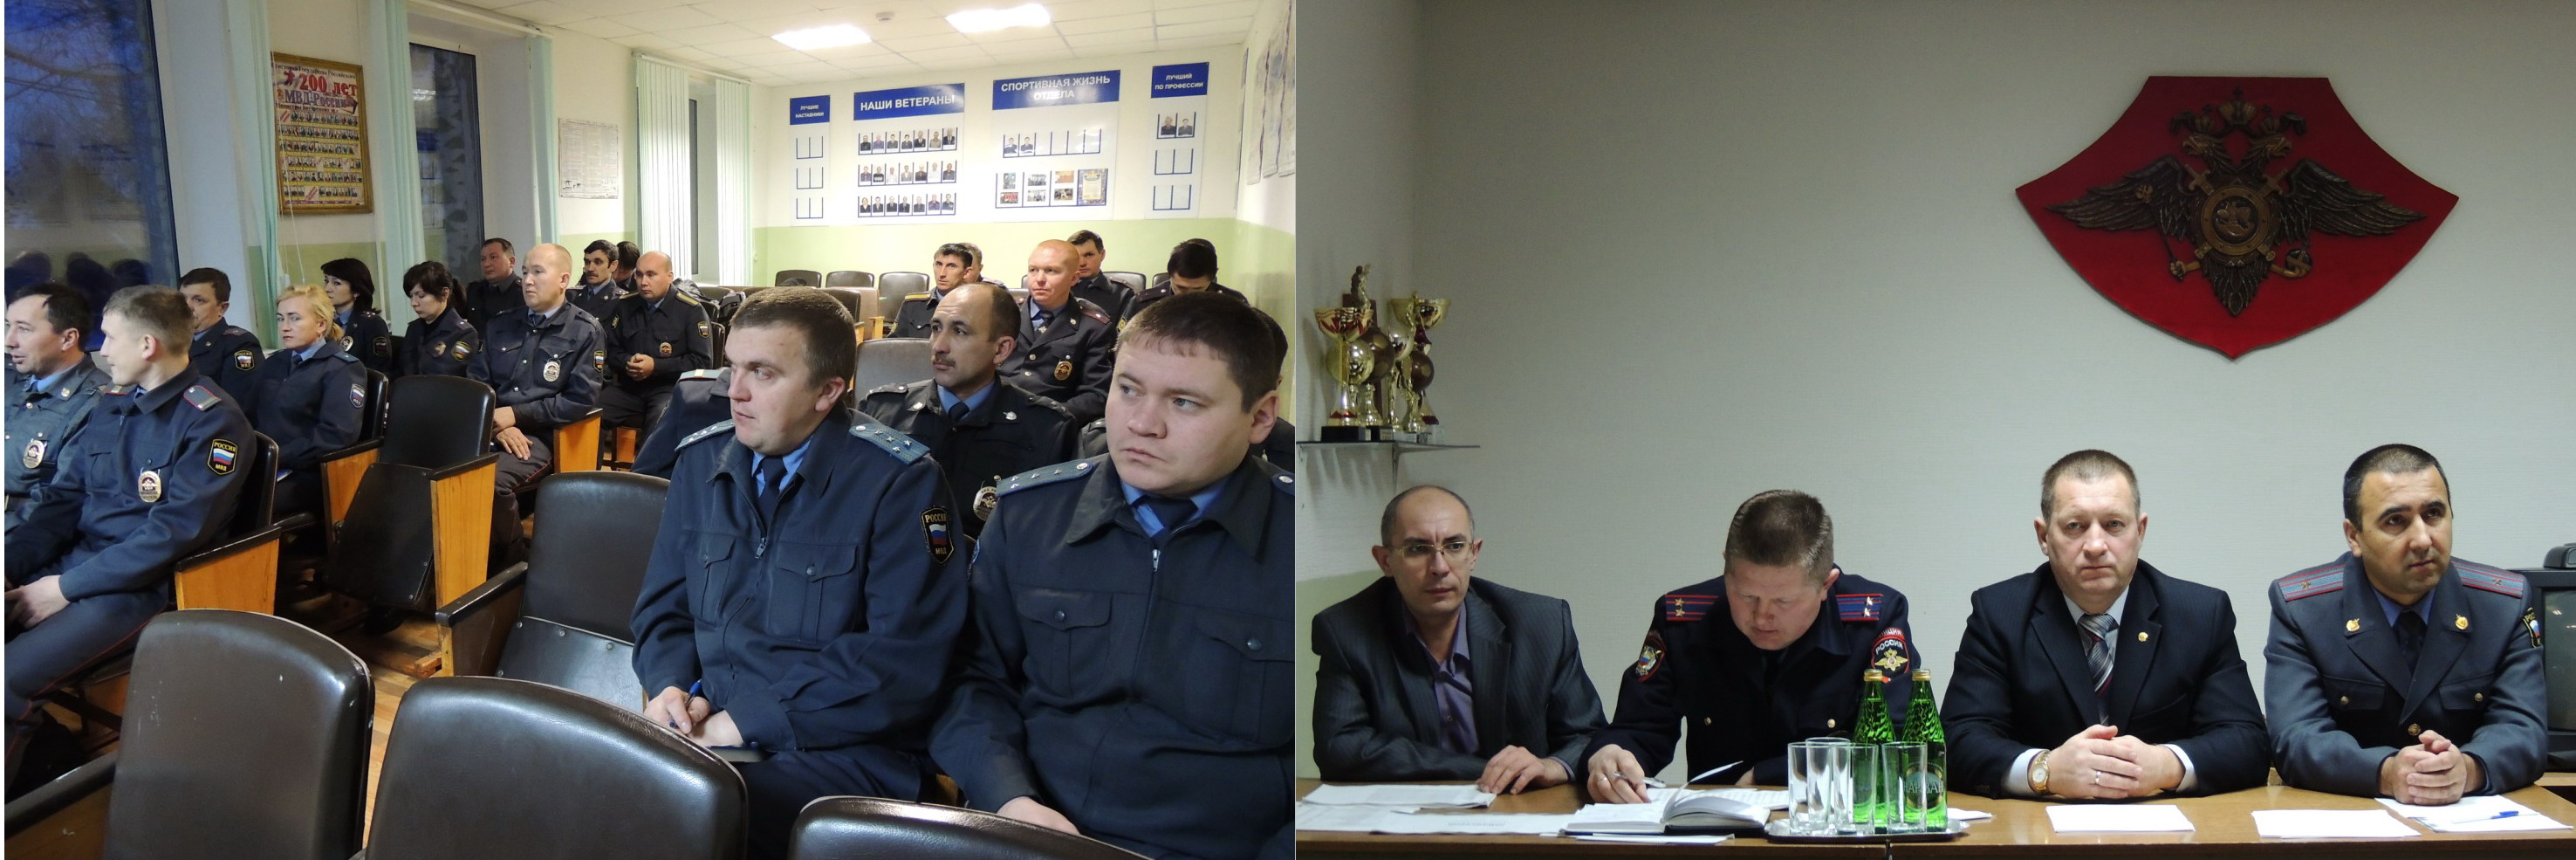 Подведены итоги работы отделения полиции по Красночетайскому району  МО МВД России «Шумерлинский» за 2012 год